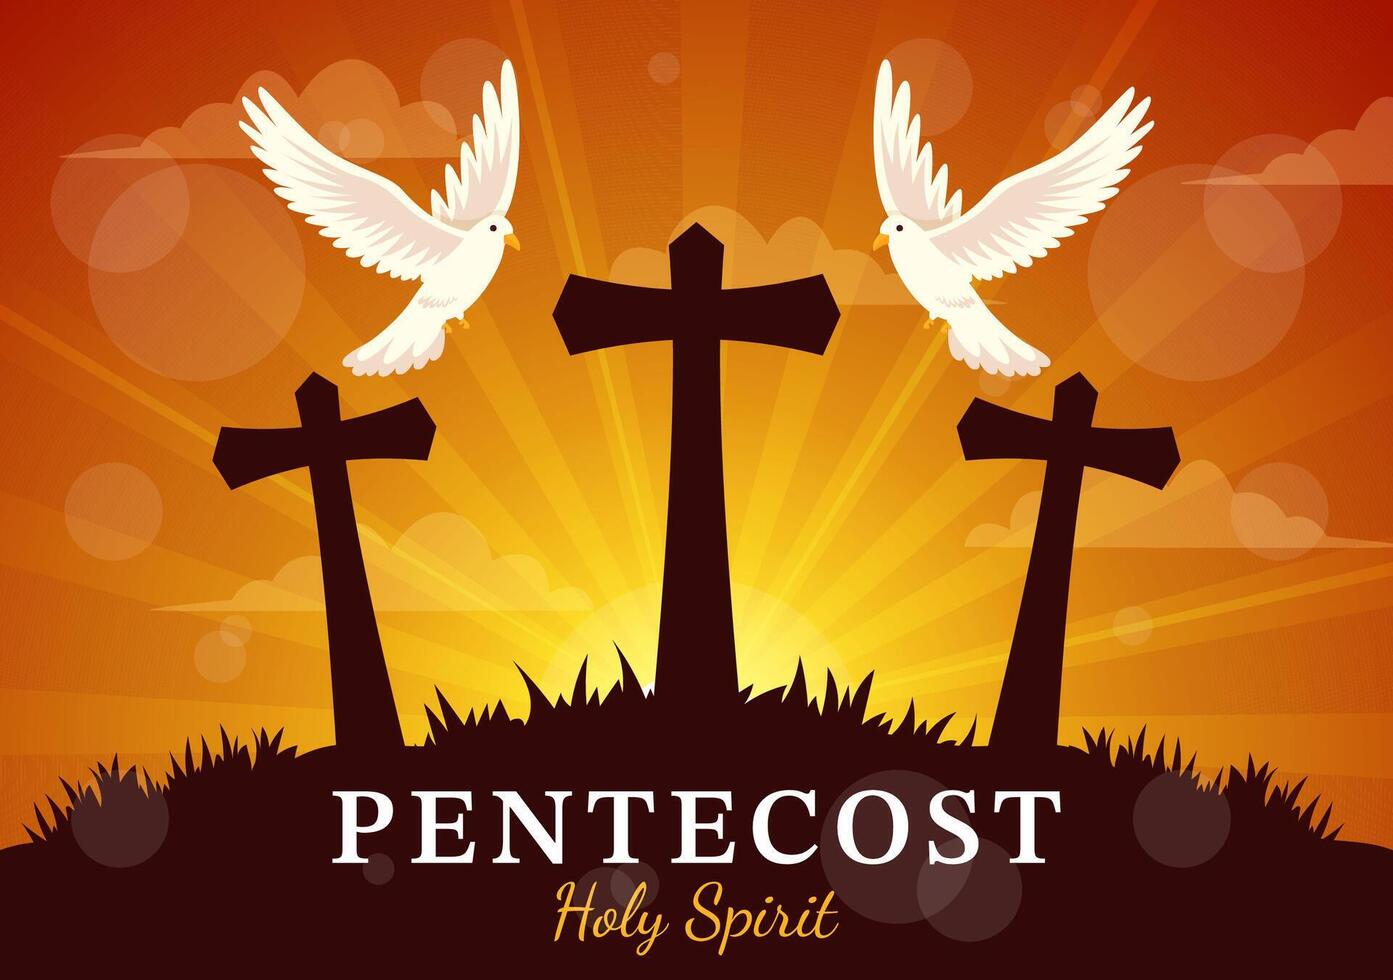 Pentecostés domingo vector ilustración con fuego y santo espíritu paloma en católicos o cristianos religioso cultura fiesta plano dibujos animados antecedentes